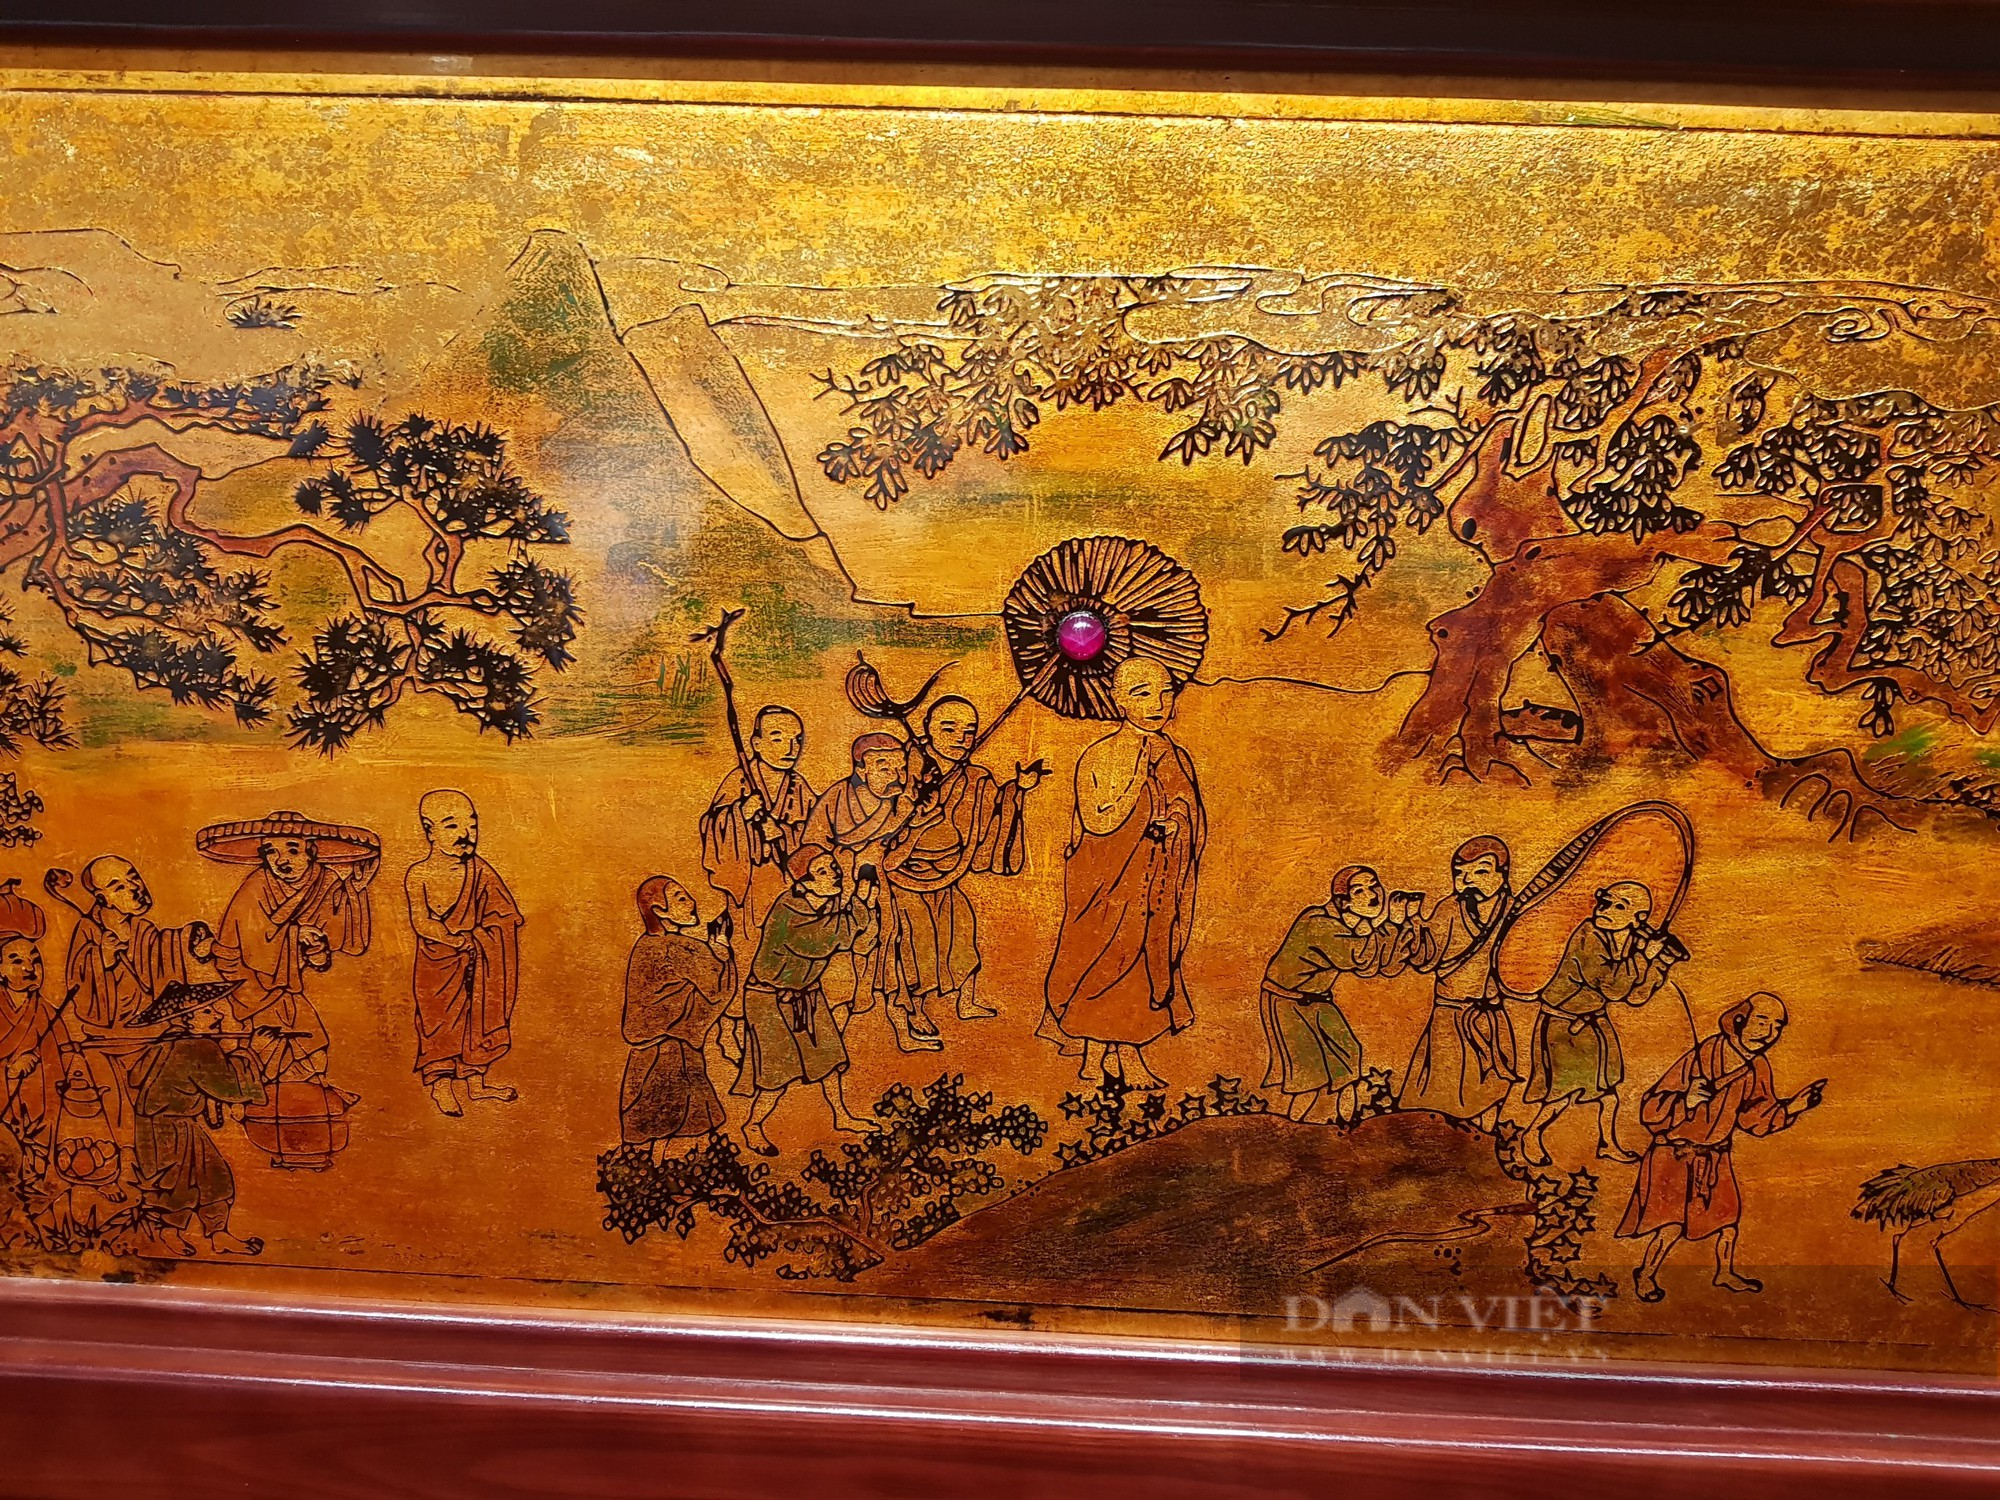 Bảo tàng Hà Nội đón nhận bức tranh chân dung Nguyễn Trãi được chuyển thể từ chất sơn mài khắc - Ảnh 6.